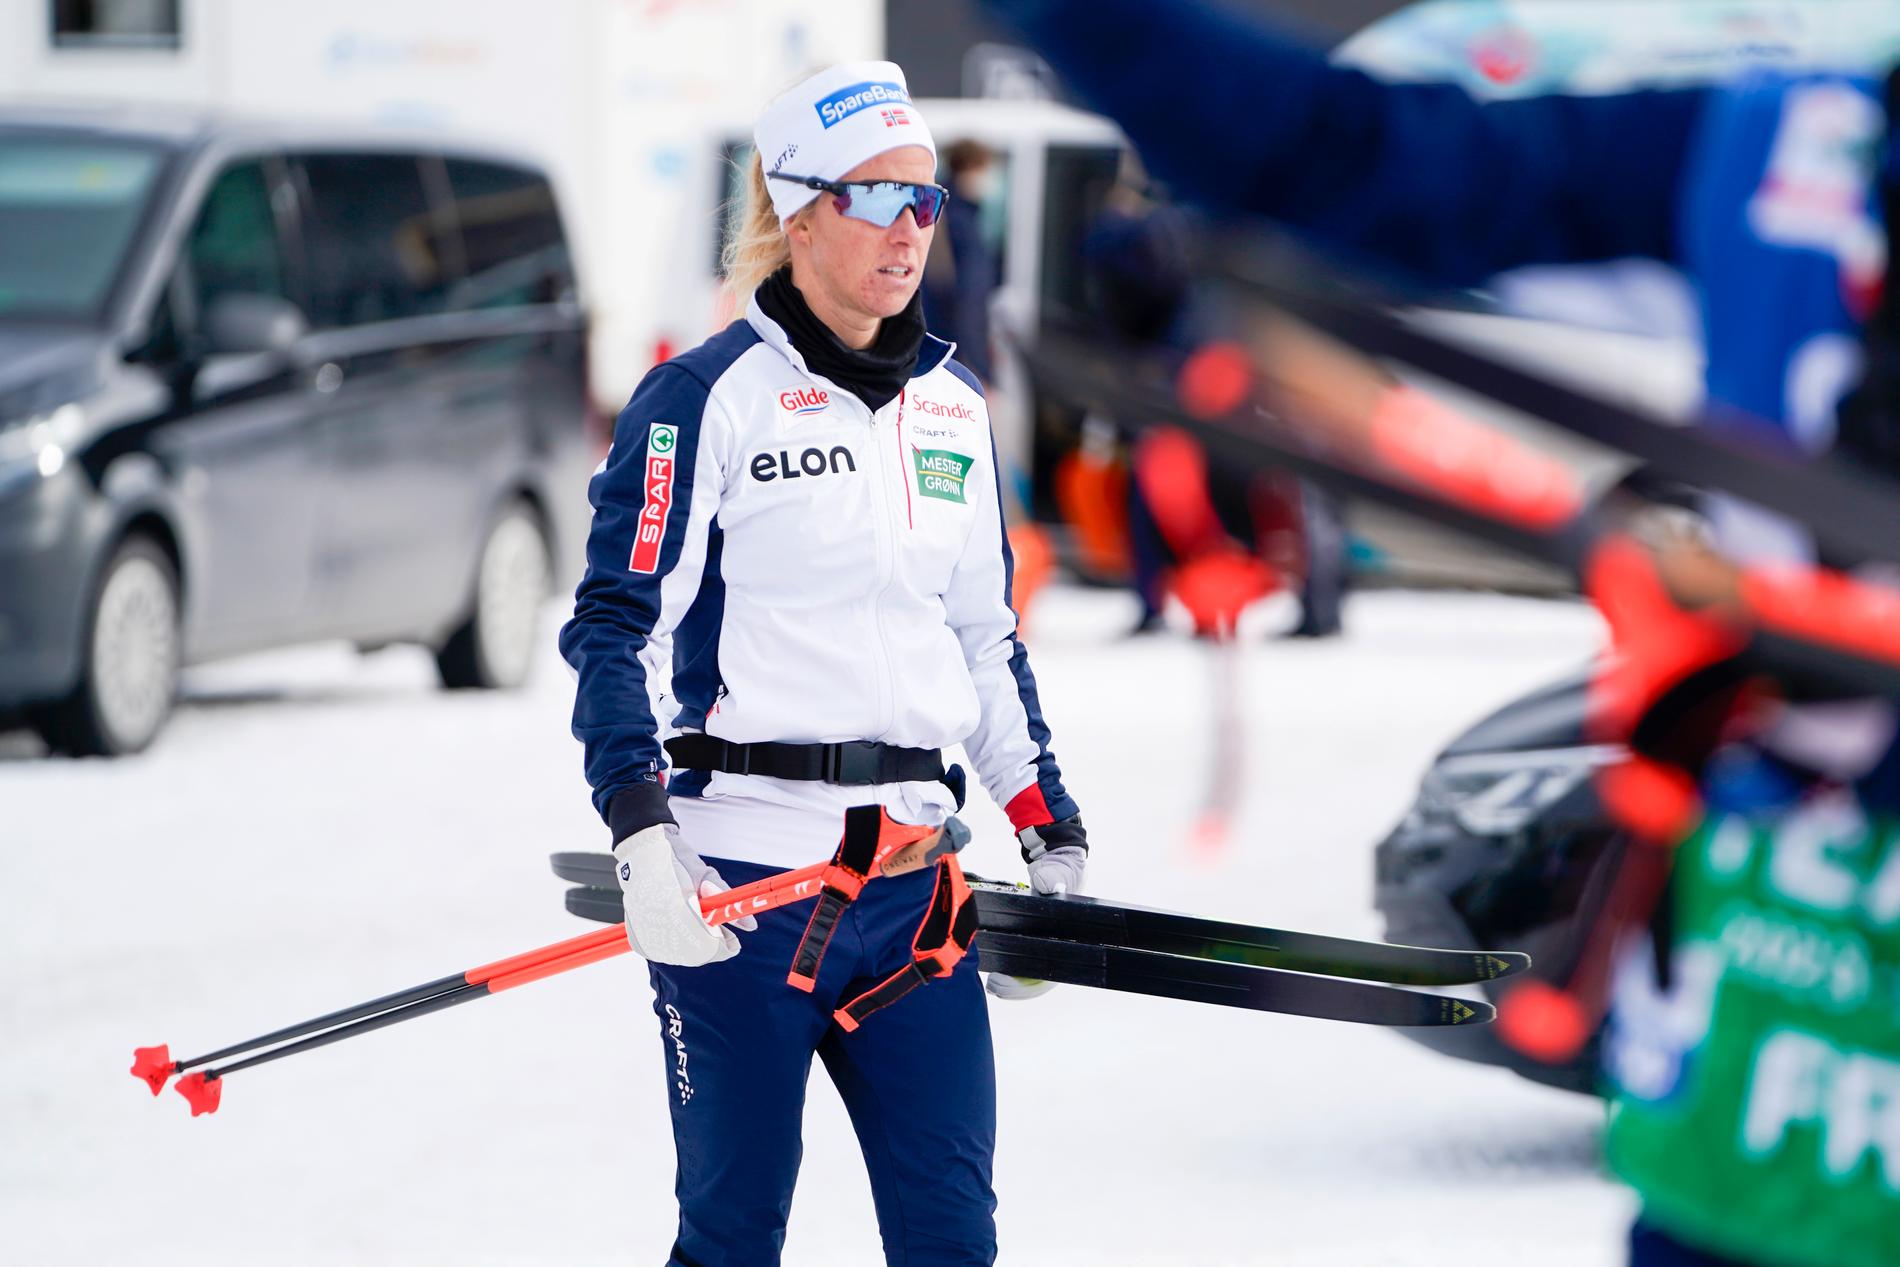 Podium candidate Astrid Auer Slind exits the Tour de Ski